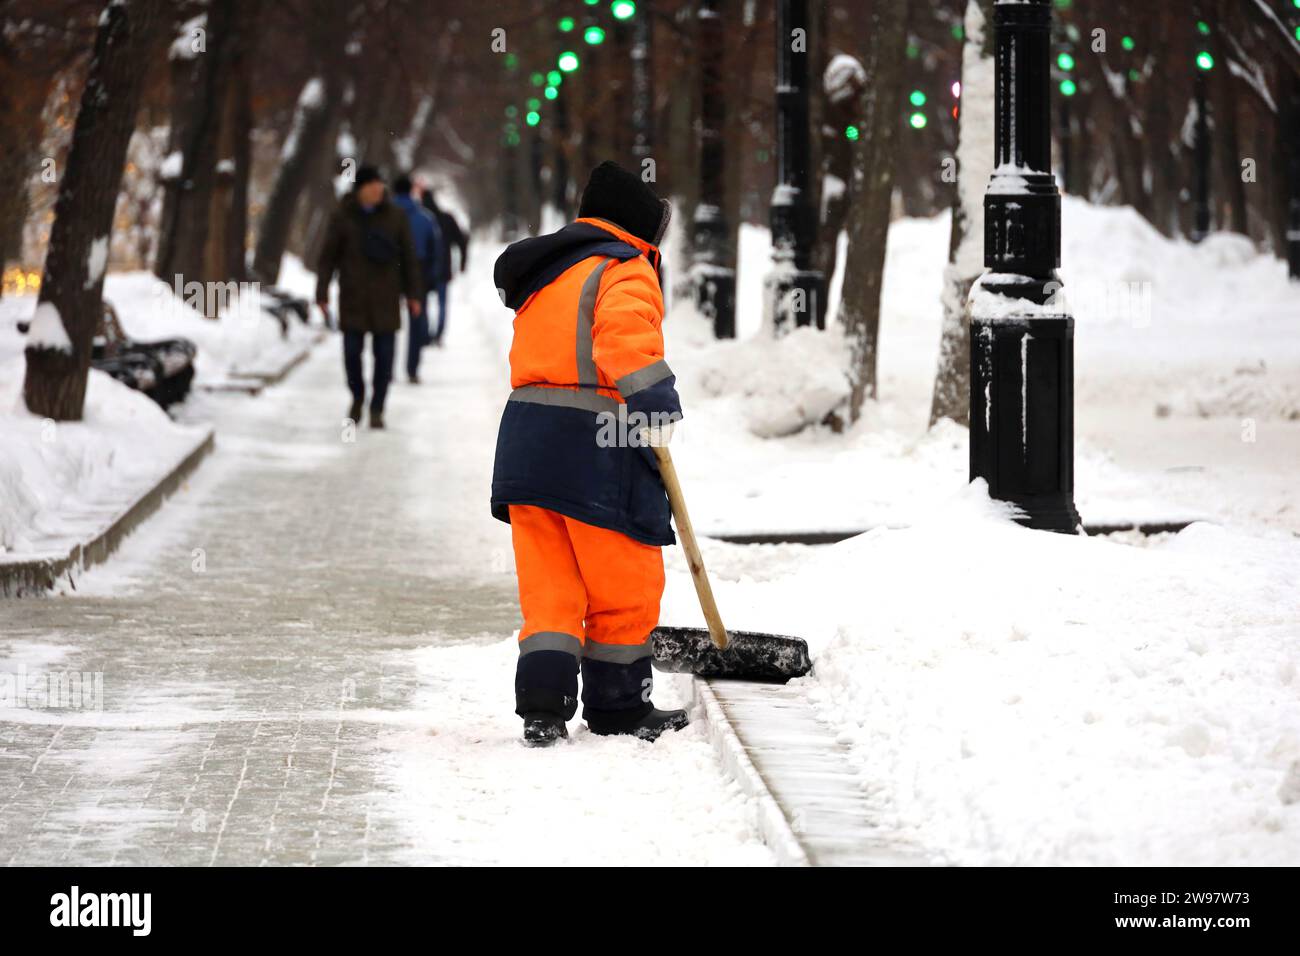 Kommunaler Arbeiter in Uniform mit Schaufel räumt Schnee auf einem Bürgersteig ab. Frau bei Schneeräumung in der Winterstadt, Straßenreinigung Stockfoto